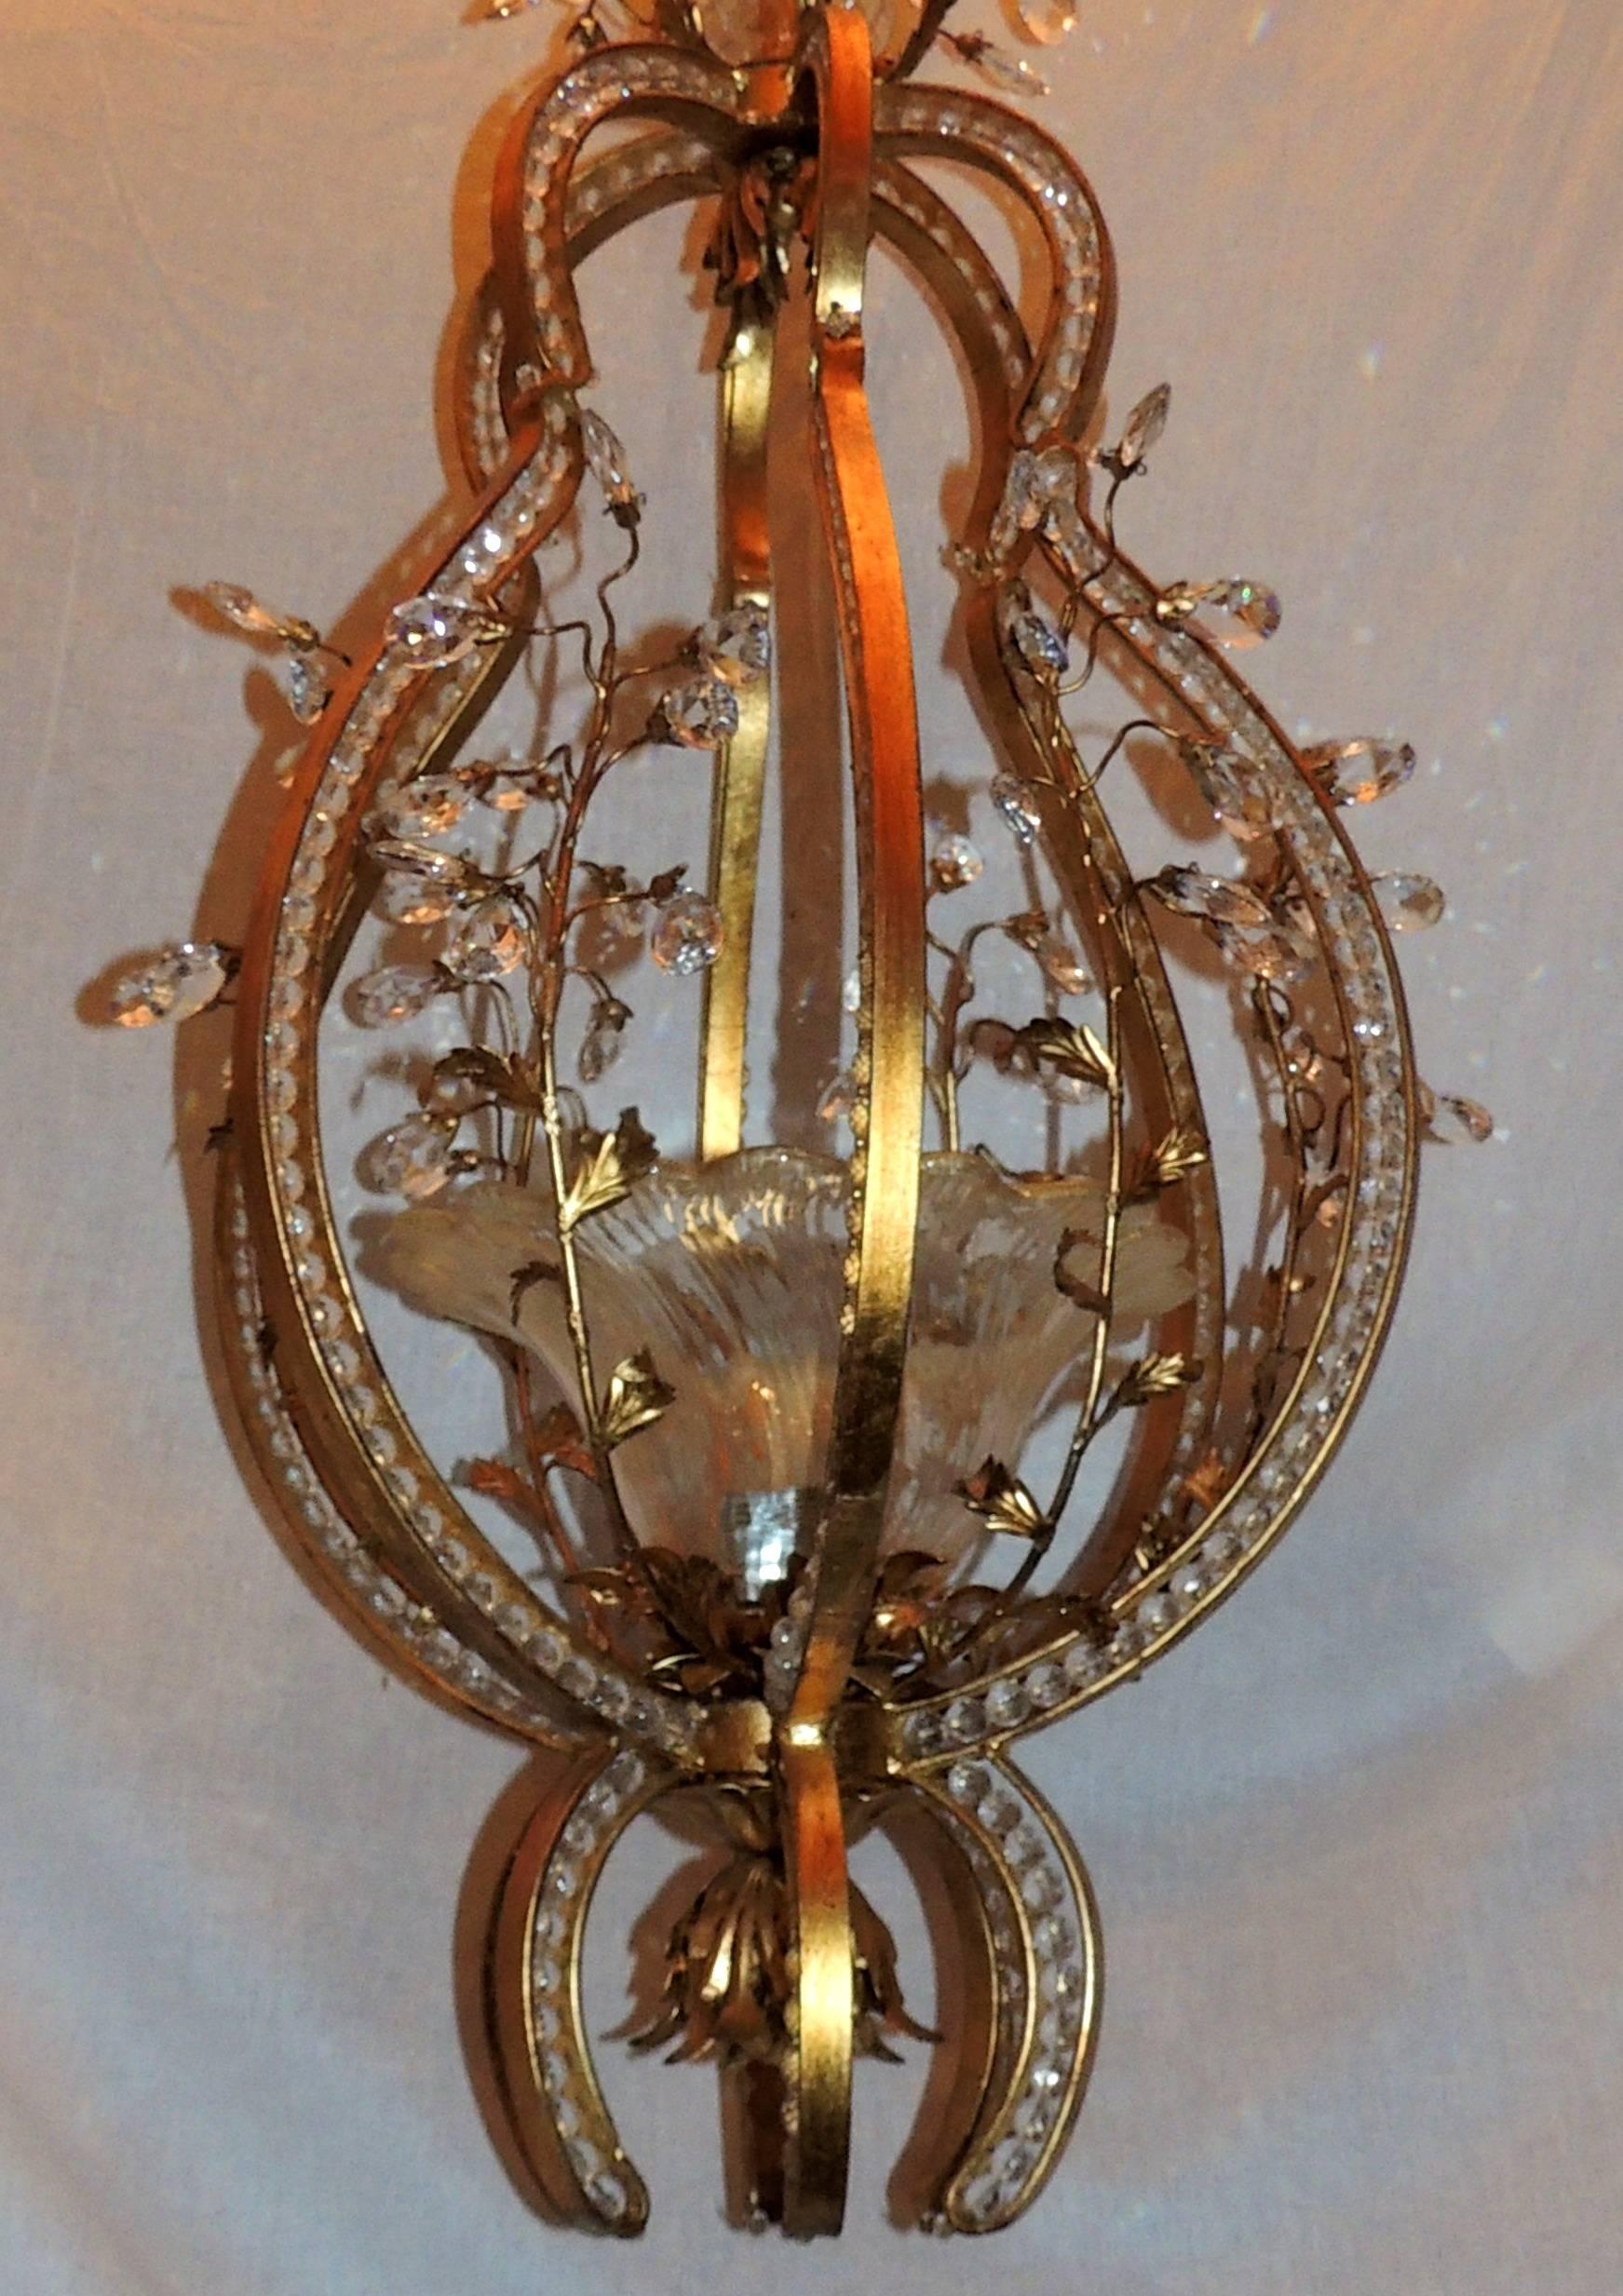 Une merveilleuse paire de lanternes italiennes en verre soufflé Baguès avec des fleurs, une seule lumière et une ampoule Edison de 100 watts, ornée de gerbes de cristaux de fleurs.
Chacune est vendue séparément.